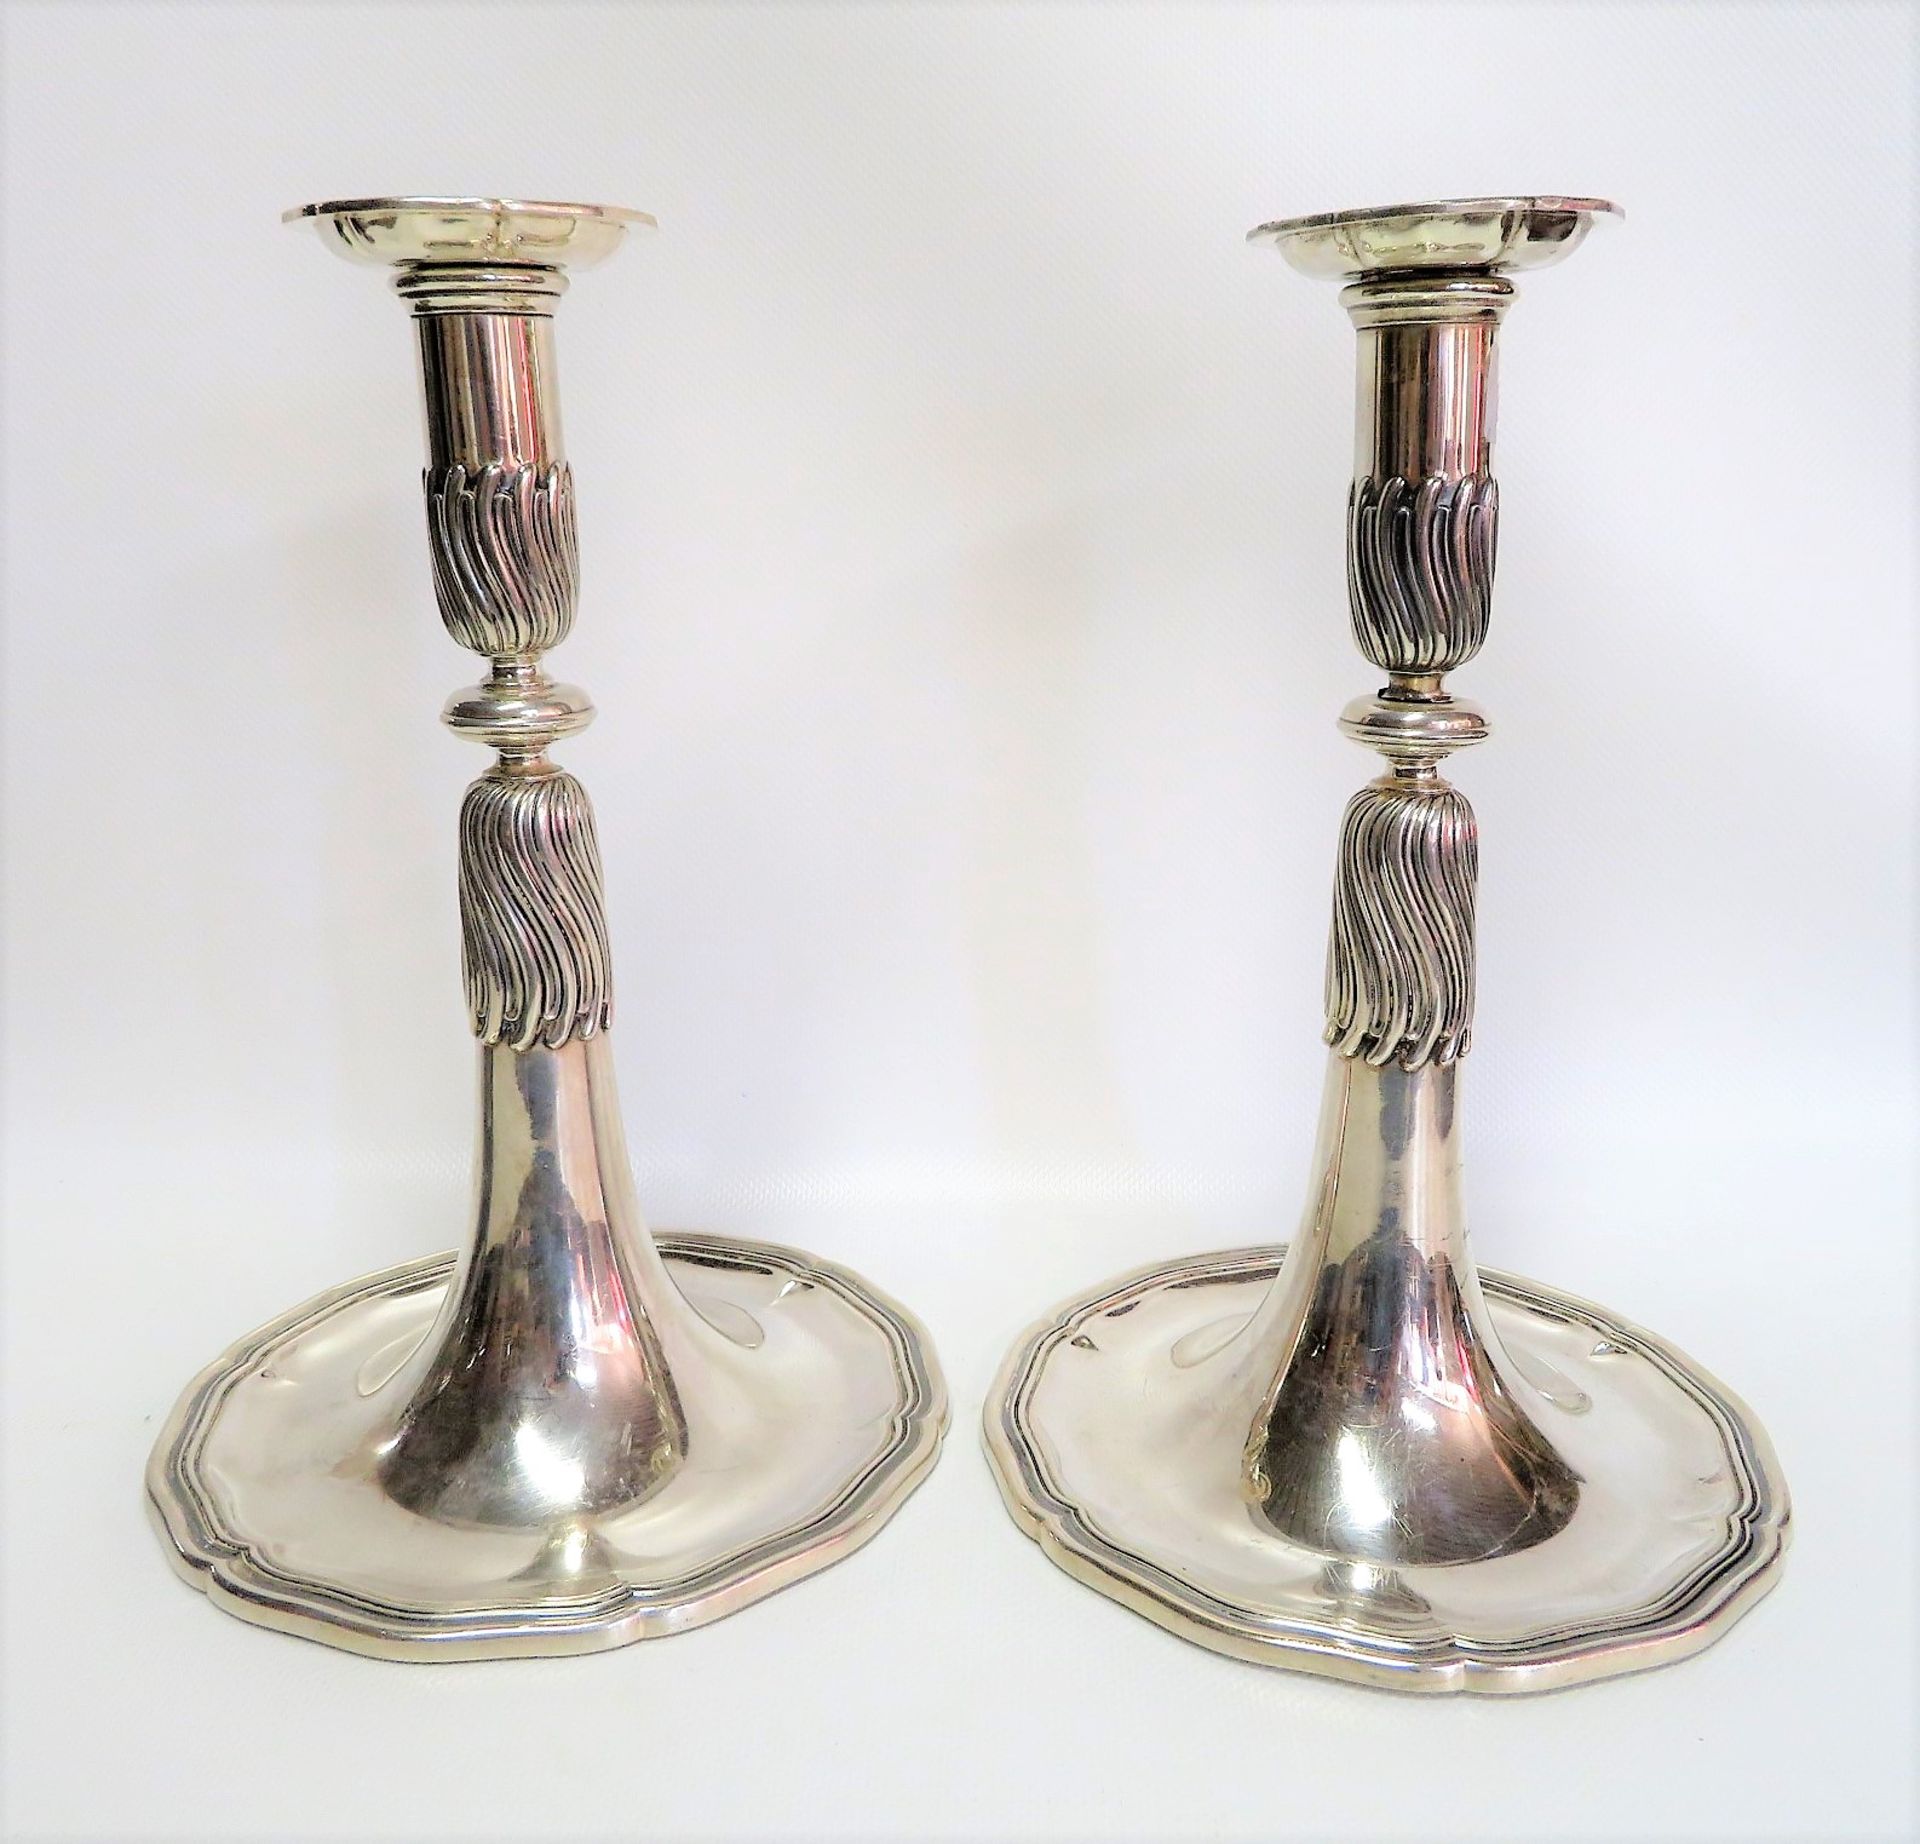 Paar Kerzenleuchter, Silbermanufaktur Jezler Schweiz, 800er Silber, gepunzt, 790 g, h 24 cm, d 16